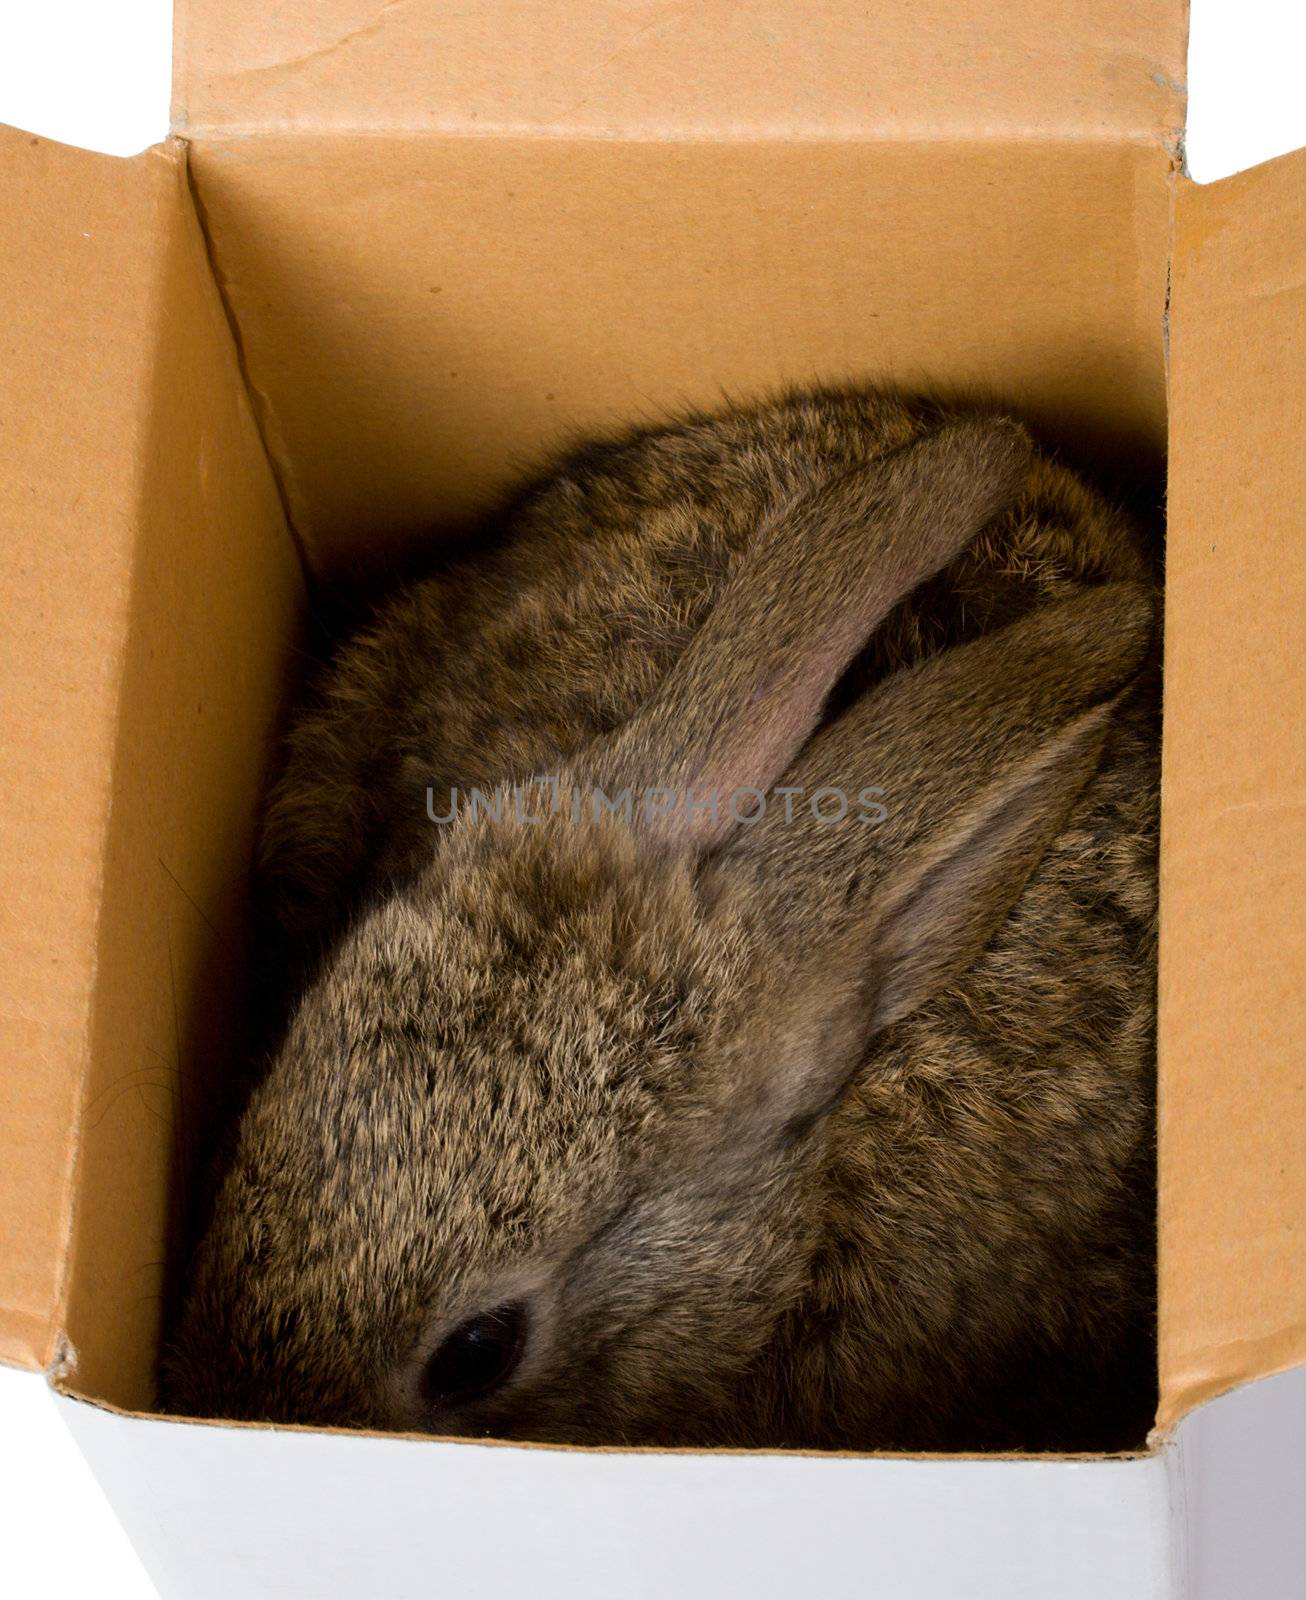 bunny hiding in box by Alekcey